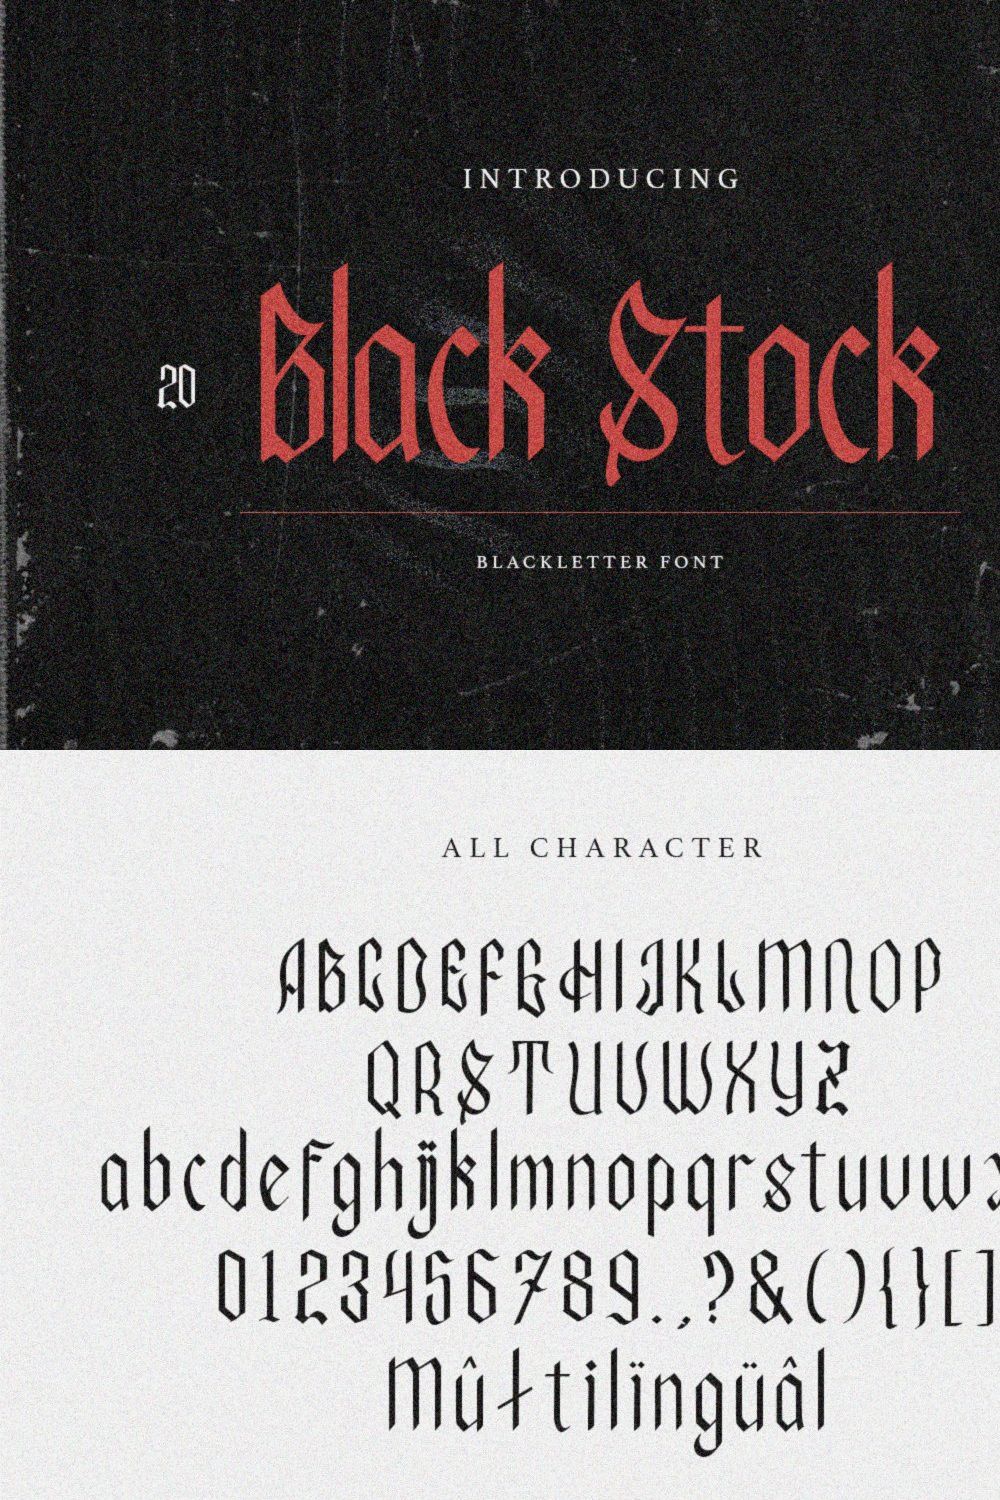 Black Stock - Blackletter Font pinterest preview image.